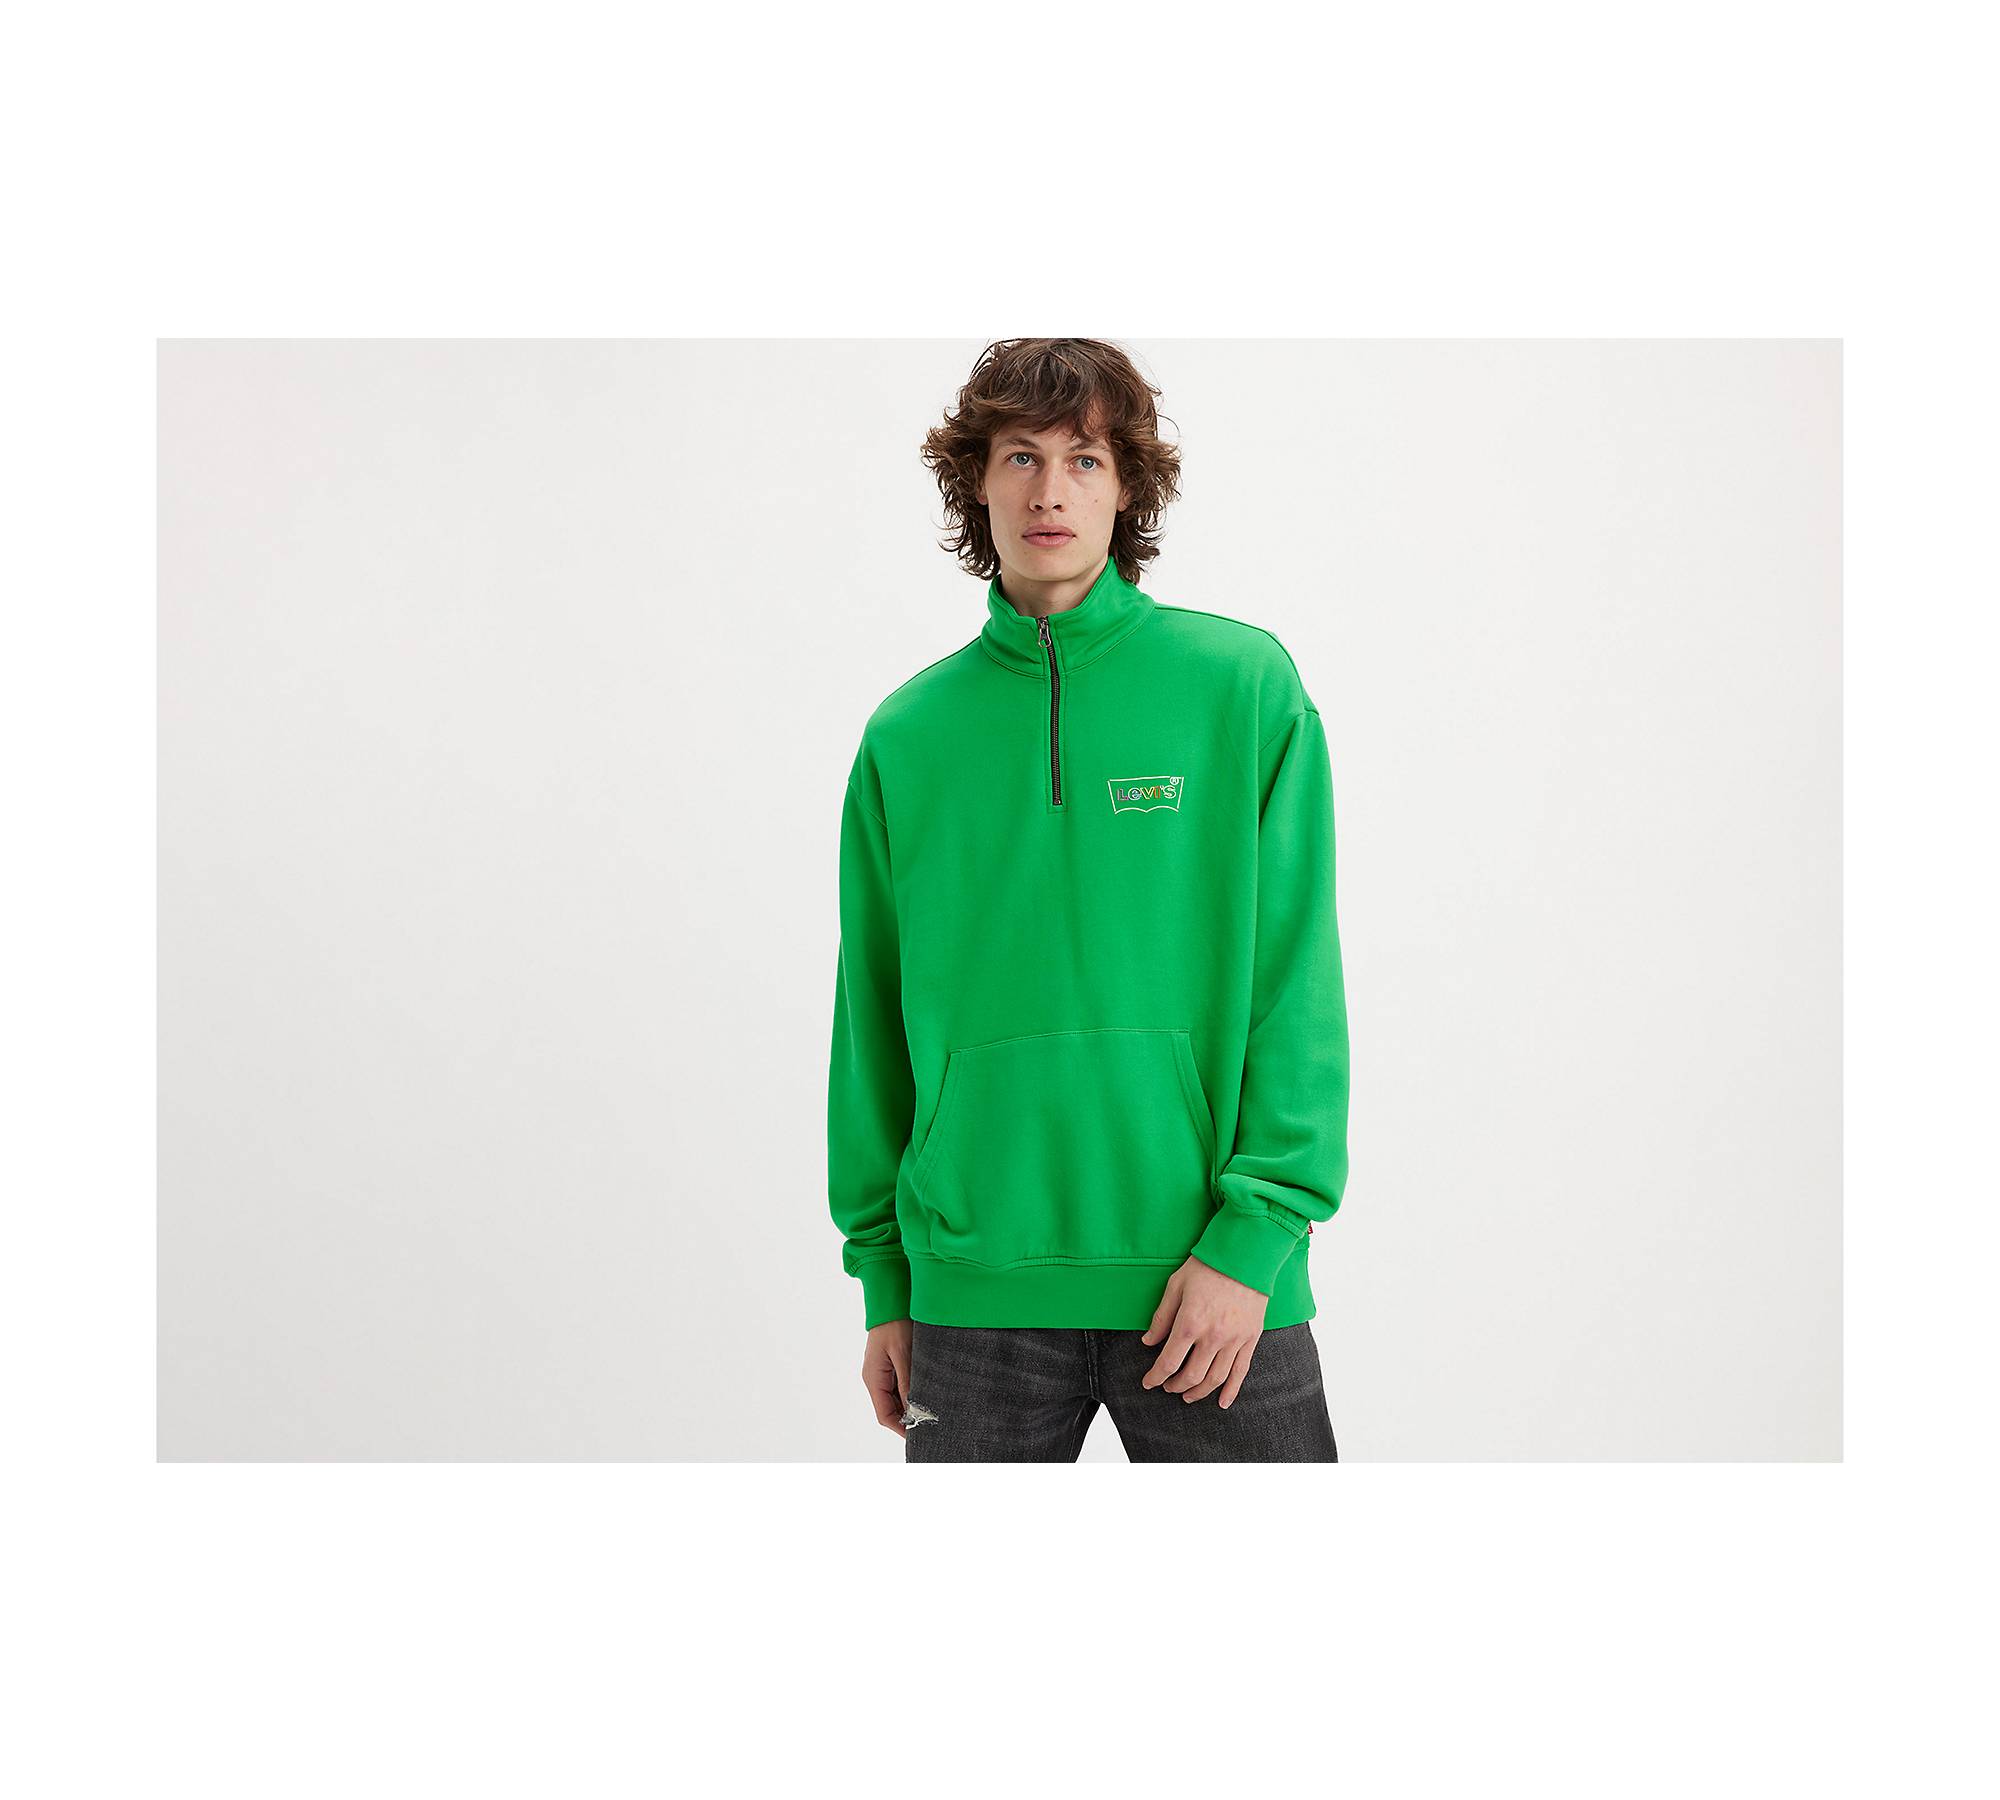 1/4 Zip Sweater, Regular Fit – Dockers®